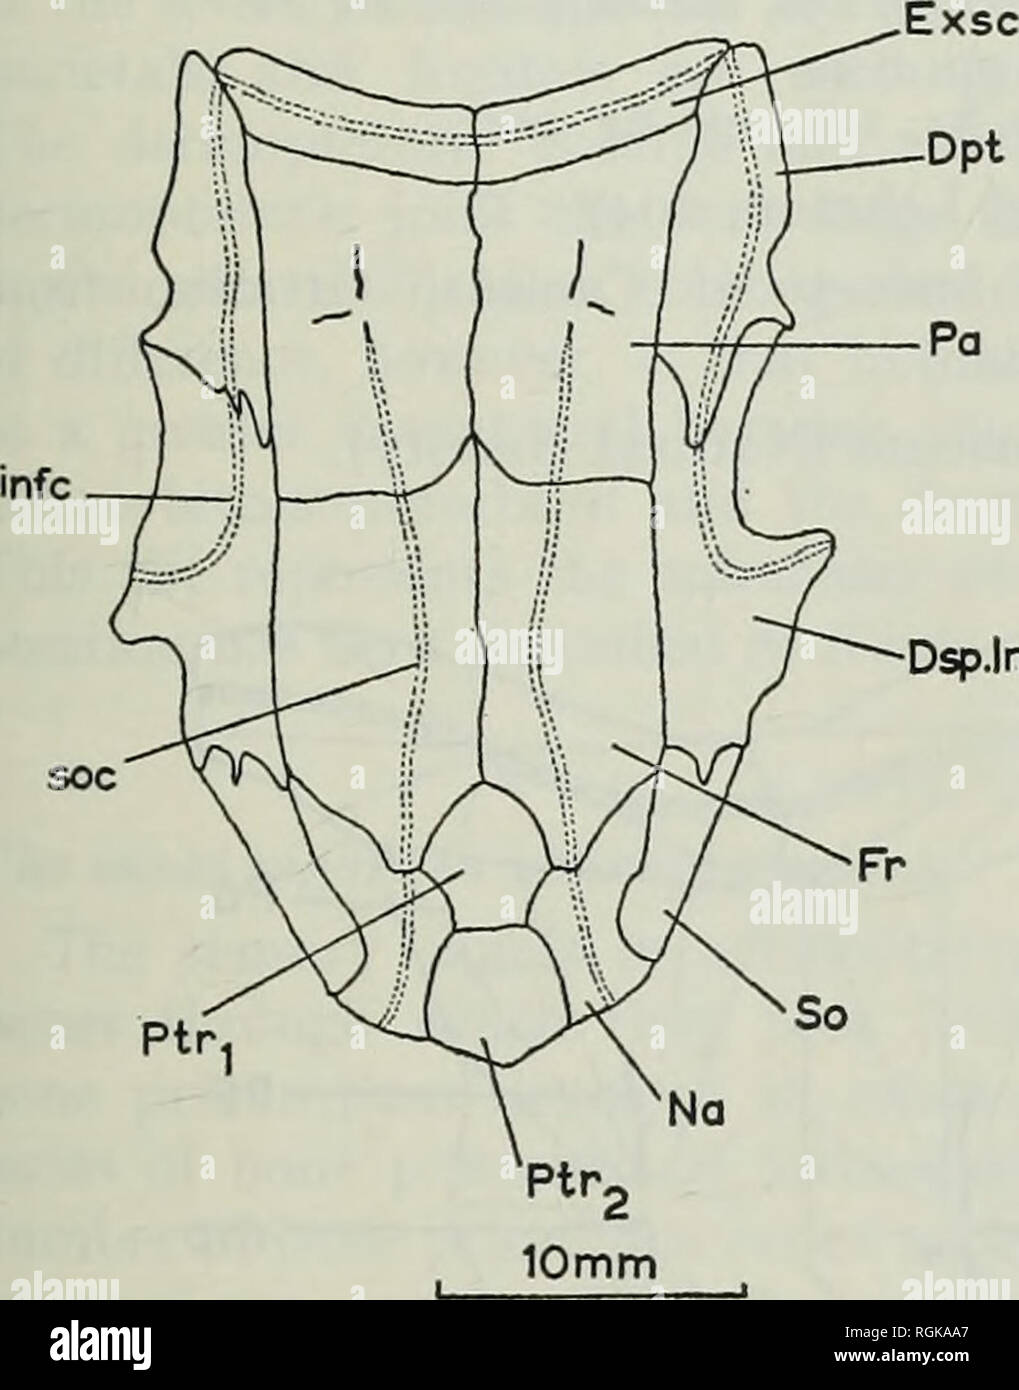 . Bollettino del Museo Britannico di storia naturale), la geologia. Evoluzione del muso IN ACTINOPTERYGIANS 305 sopraorbitale (Testo-fig. 14). Tuttavia sembra che all'interno di questo genere questo osso è un carattere variabile e può essere presente come una singola ossificazione (DSP.Inf.in modo testo-fig. 14) o come due ossifications indipendenti (I.tern e Pt.f, Watson, 1925, testo-fig. 1). Un B. Ptr. Dsp.lnf.so. Si prega di notare che queste immagini vengono estratte dalla pagina sottoposta a scansione di immagini che possono essere state migliorate digitalmente per la leggibilità - Colorazione e aspetto di queste illustrazioni potrebbero non perfettamente resem Foto Stock